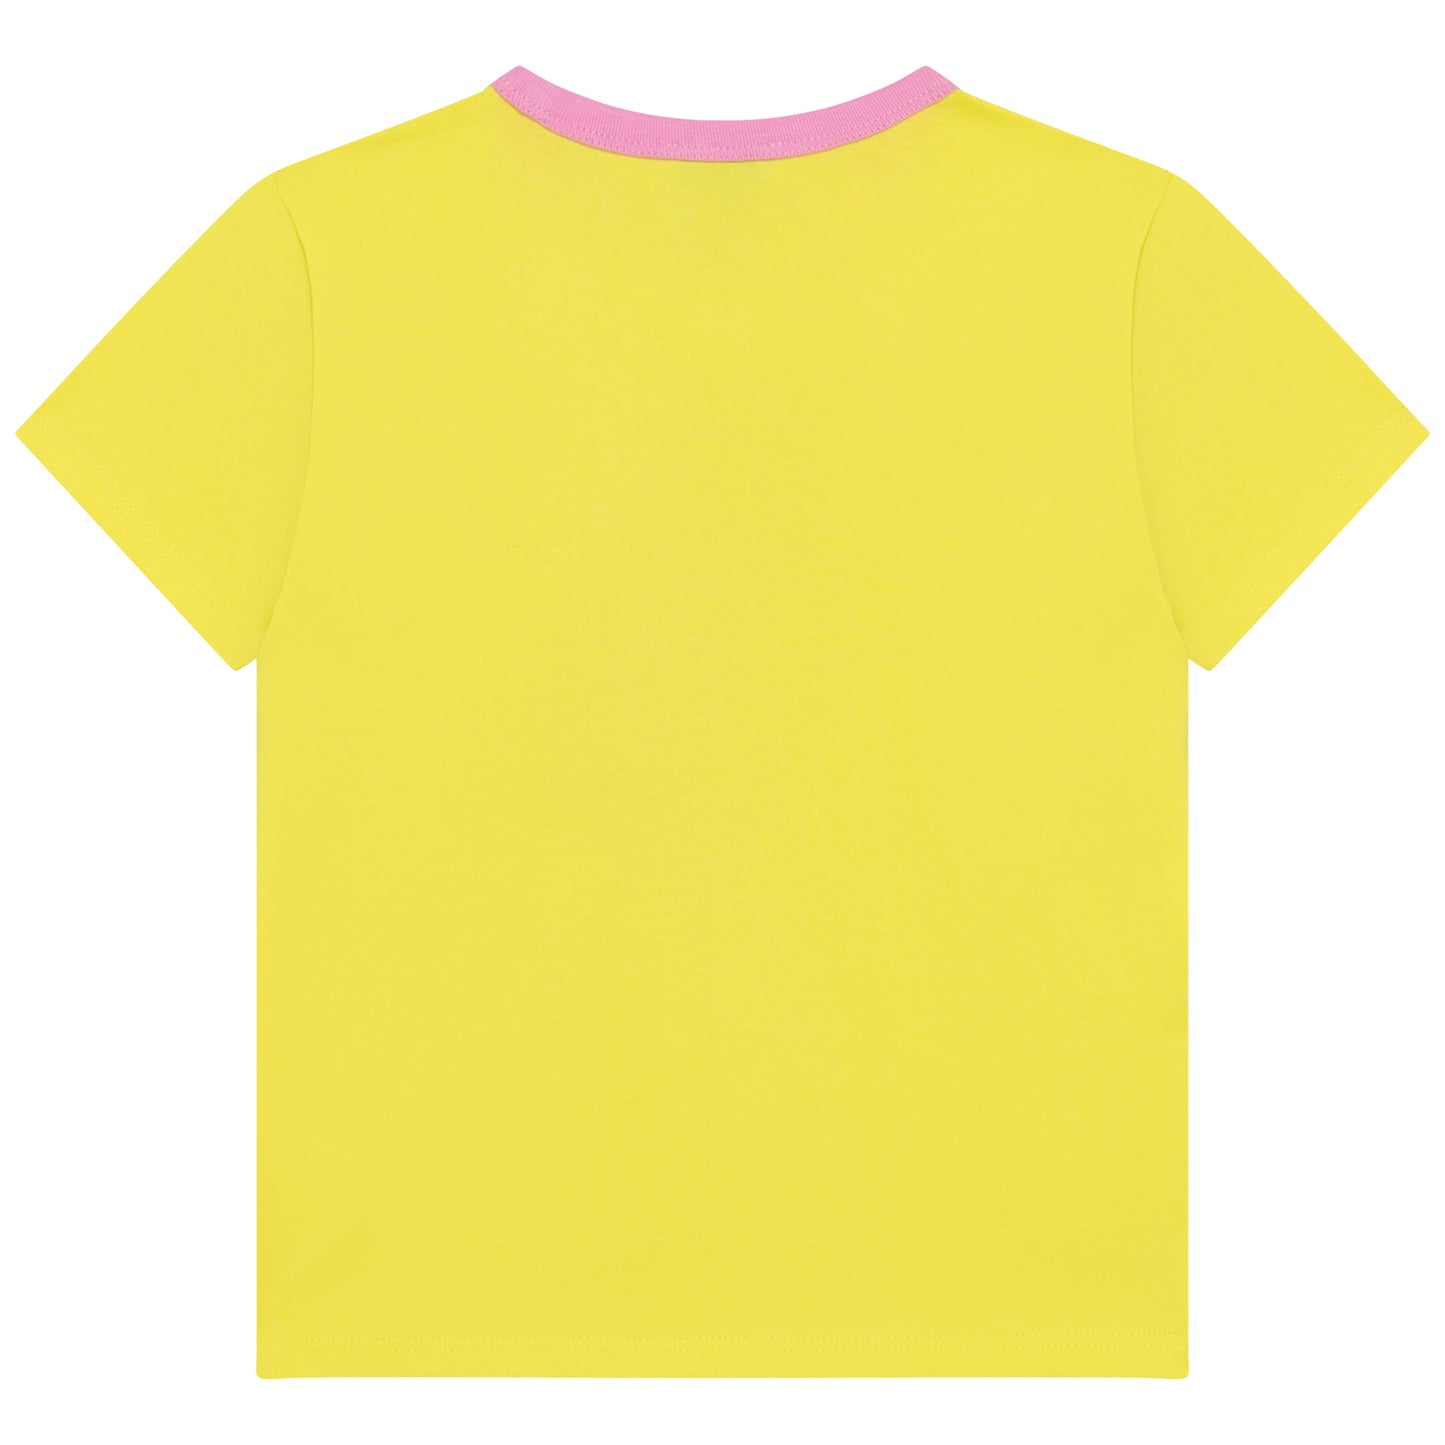 The Marc Jacobs Girls Pop T-Shirt